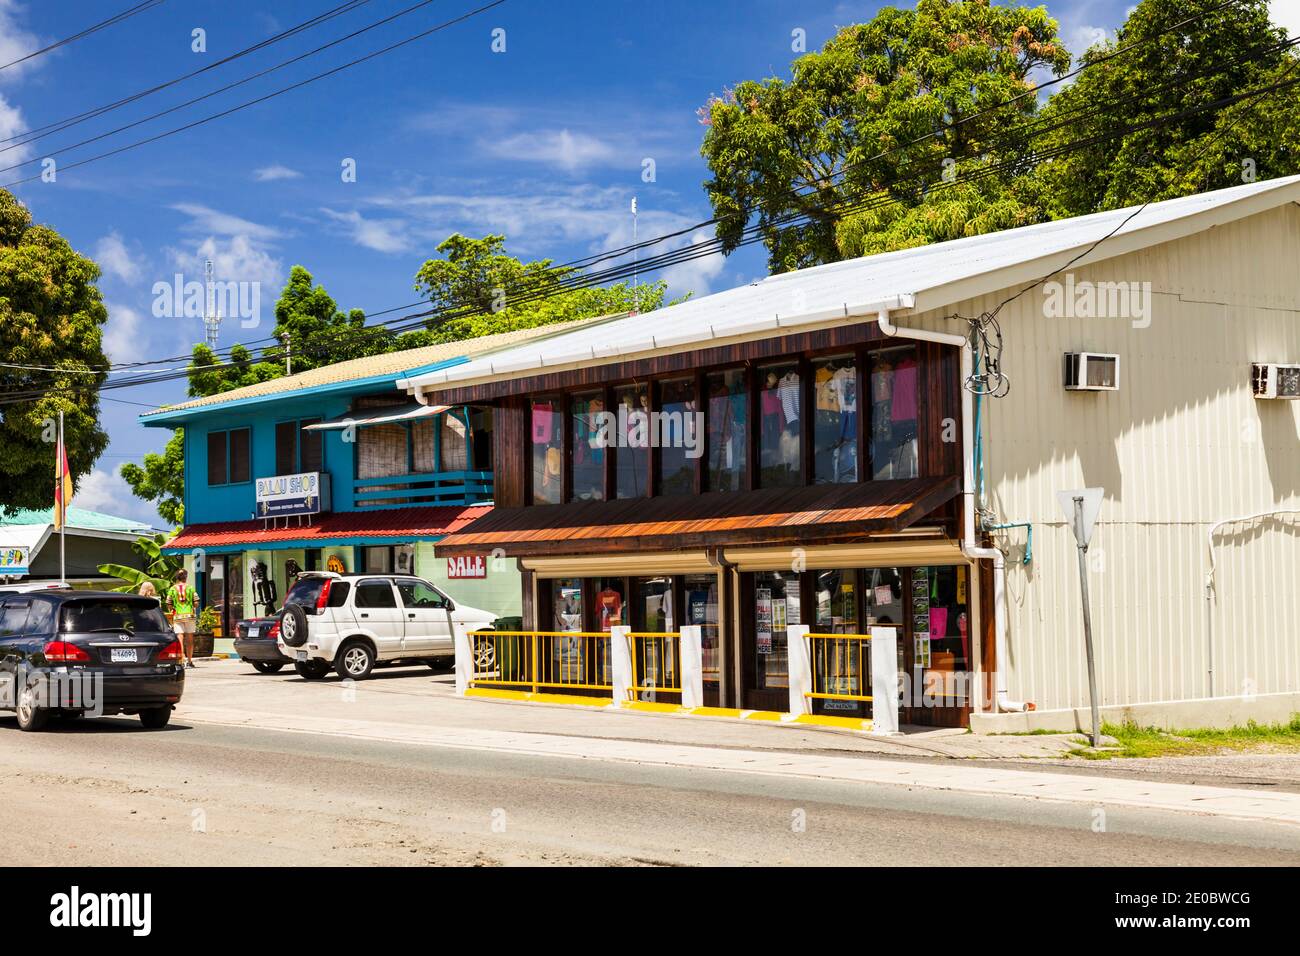 Hauptstraße der Innenstadt im Stadtzentrum, Insel Koror, Koror, Palau, Mikronesien, Ozeanien Stockfoto